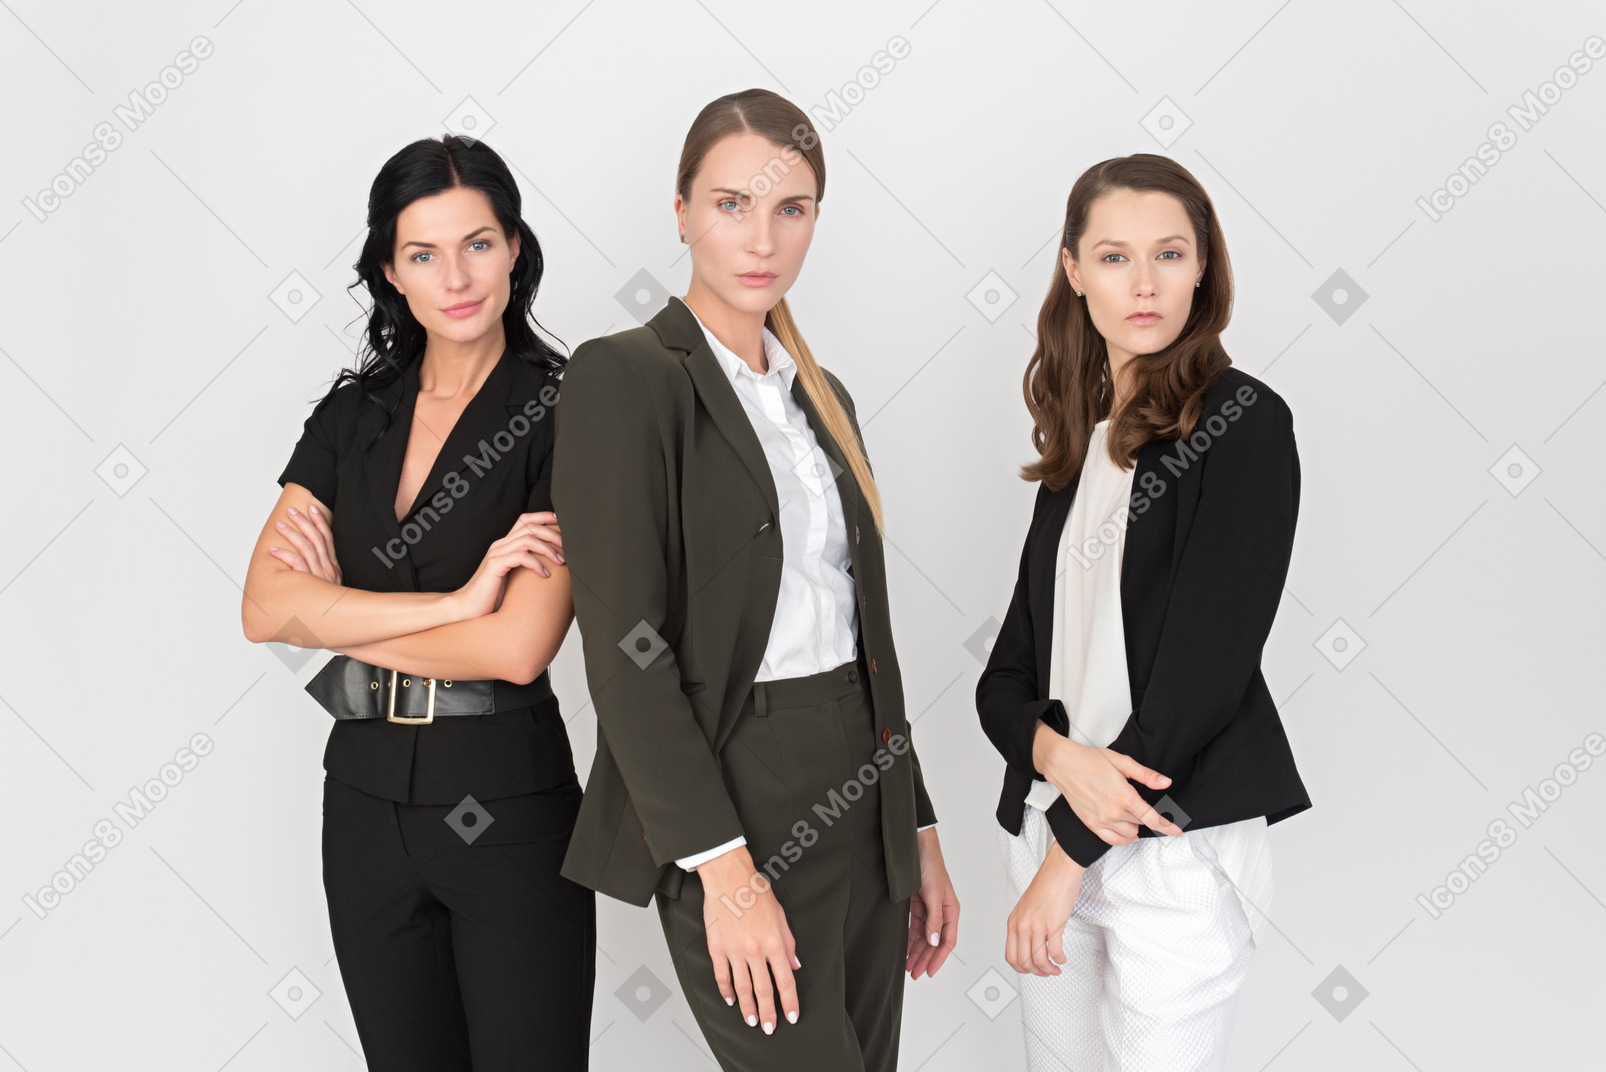 Squadra femminile pronta ad affrontare tutte le difficoltà del lavoro